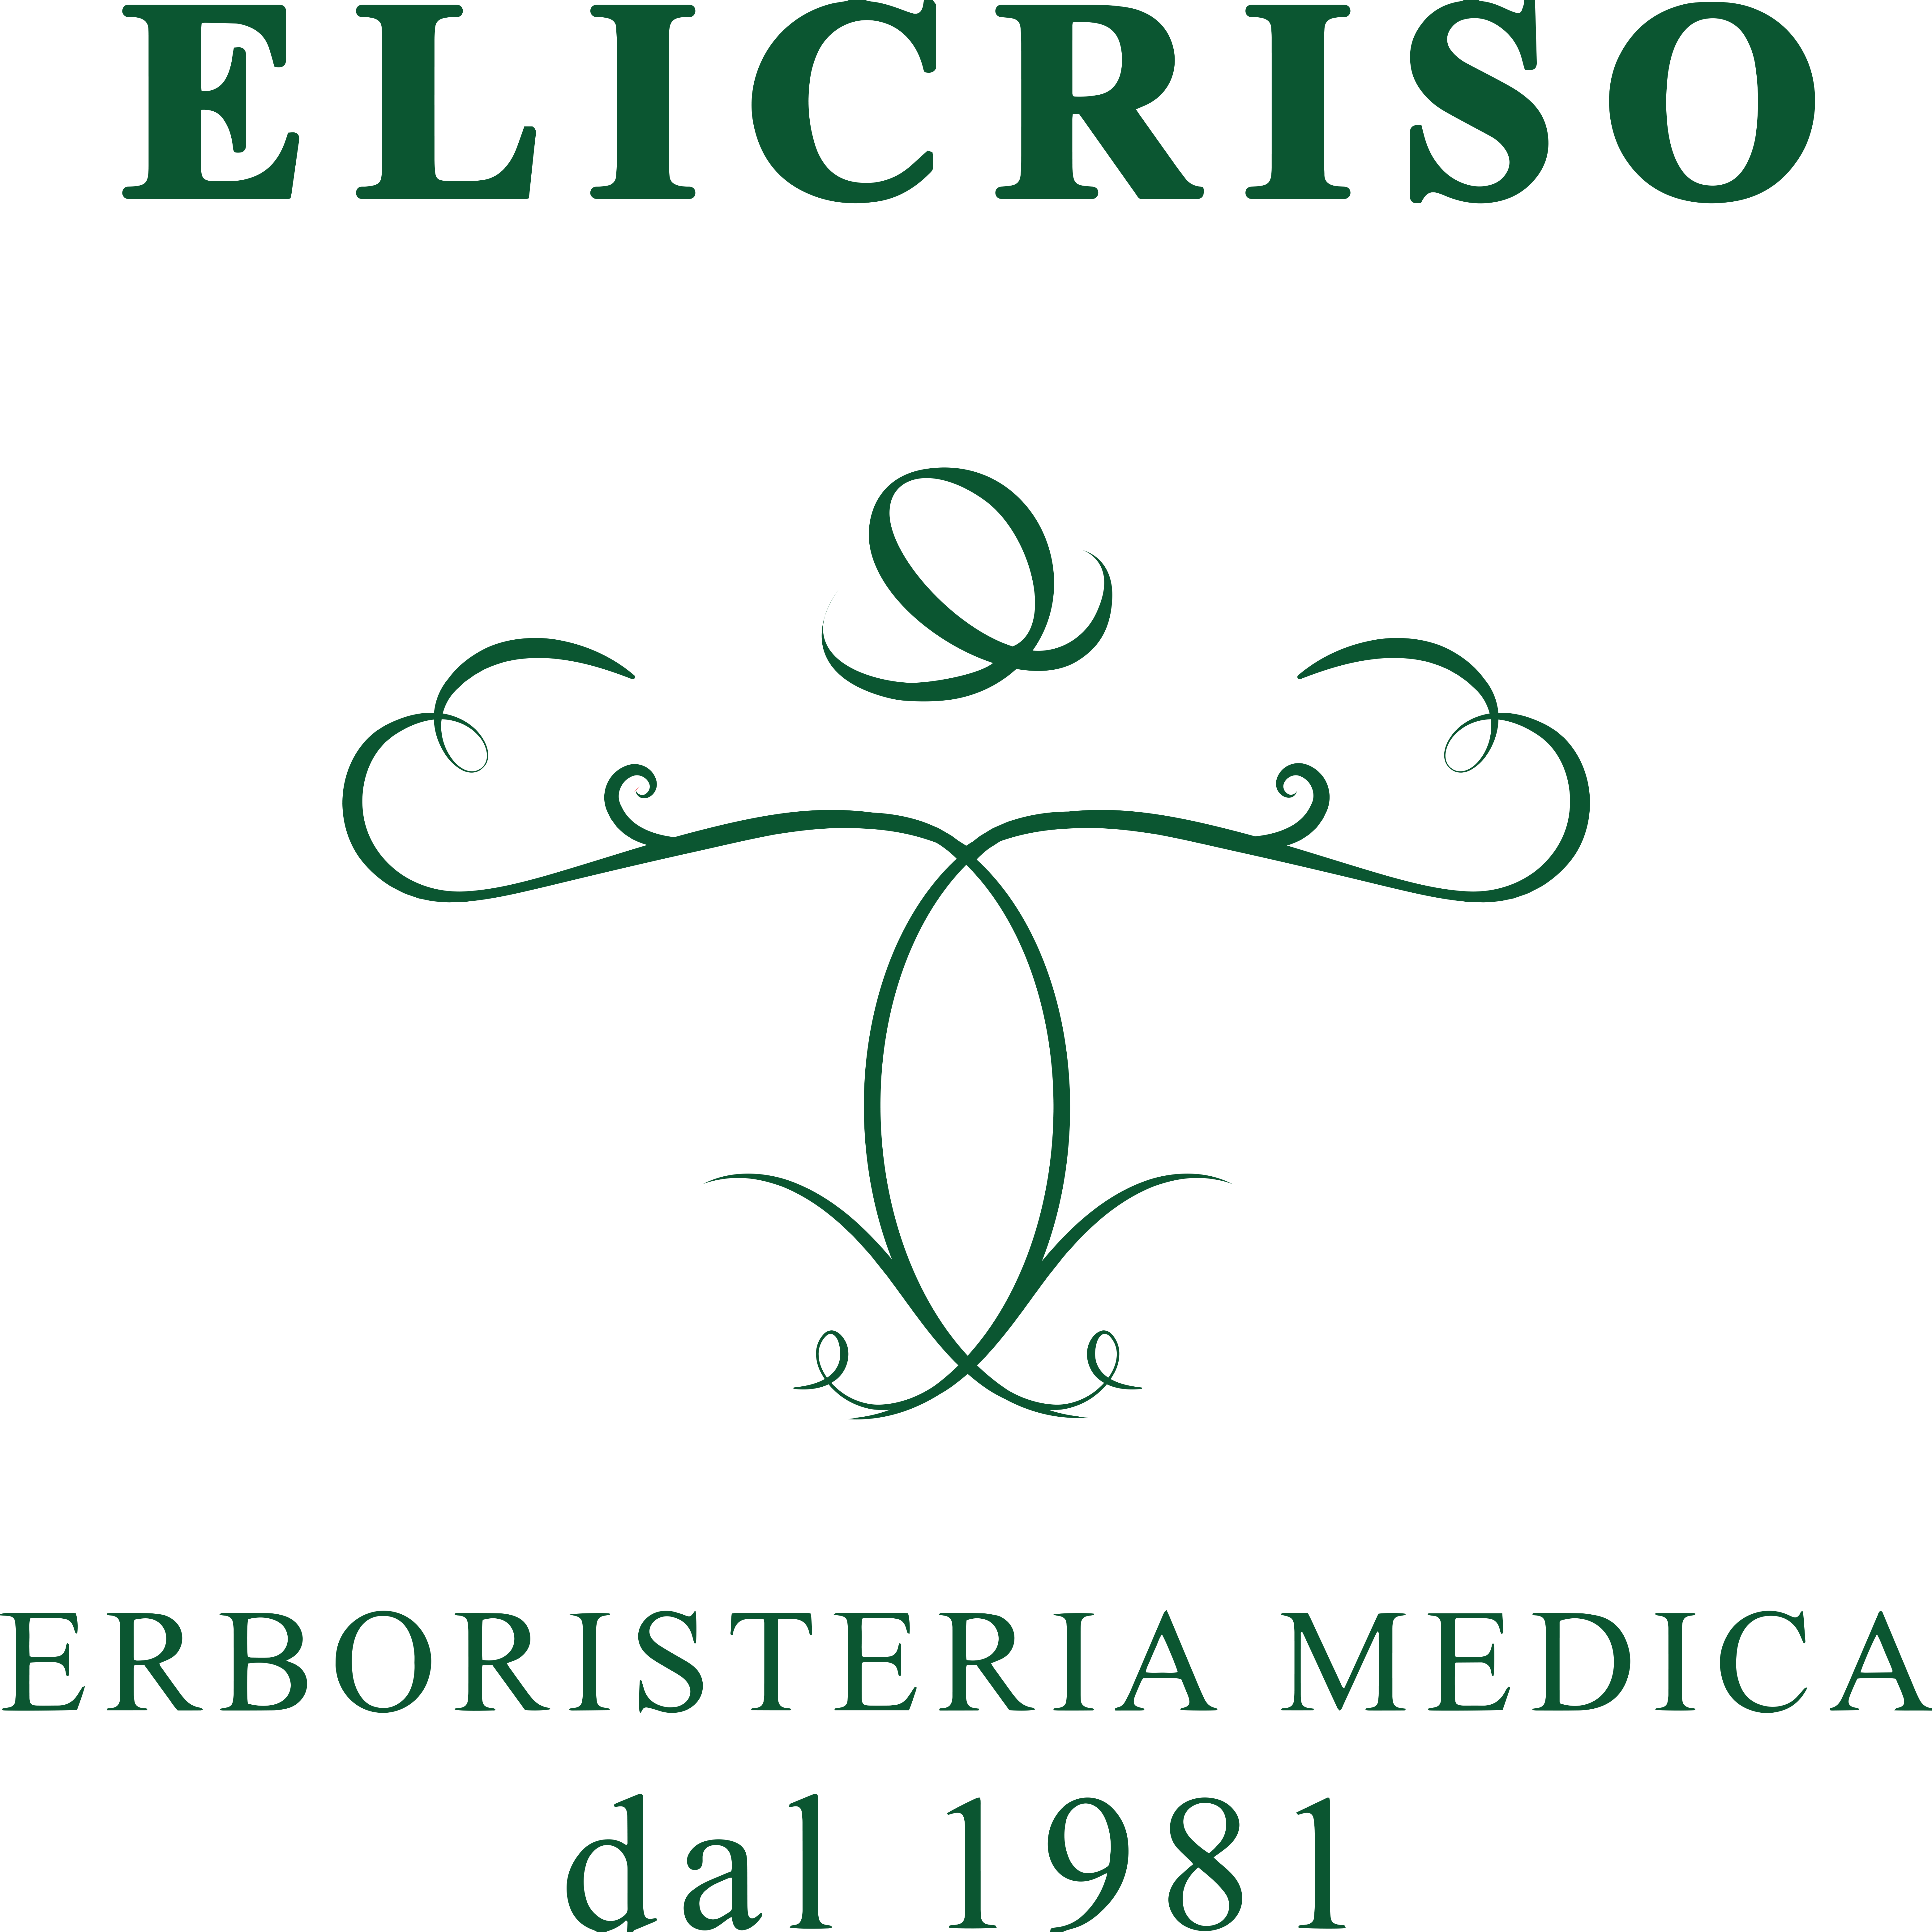 Erboristeria Medica L'Elicriso S.A.S. di Simone Cuccia